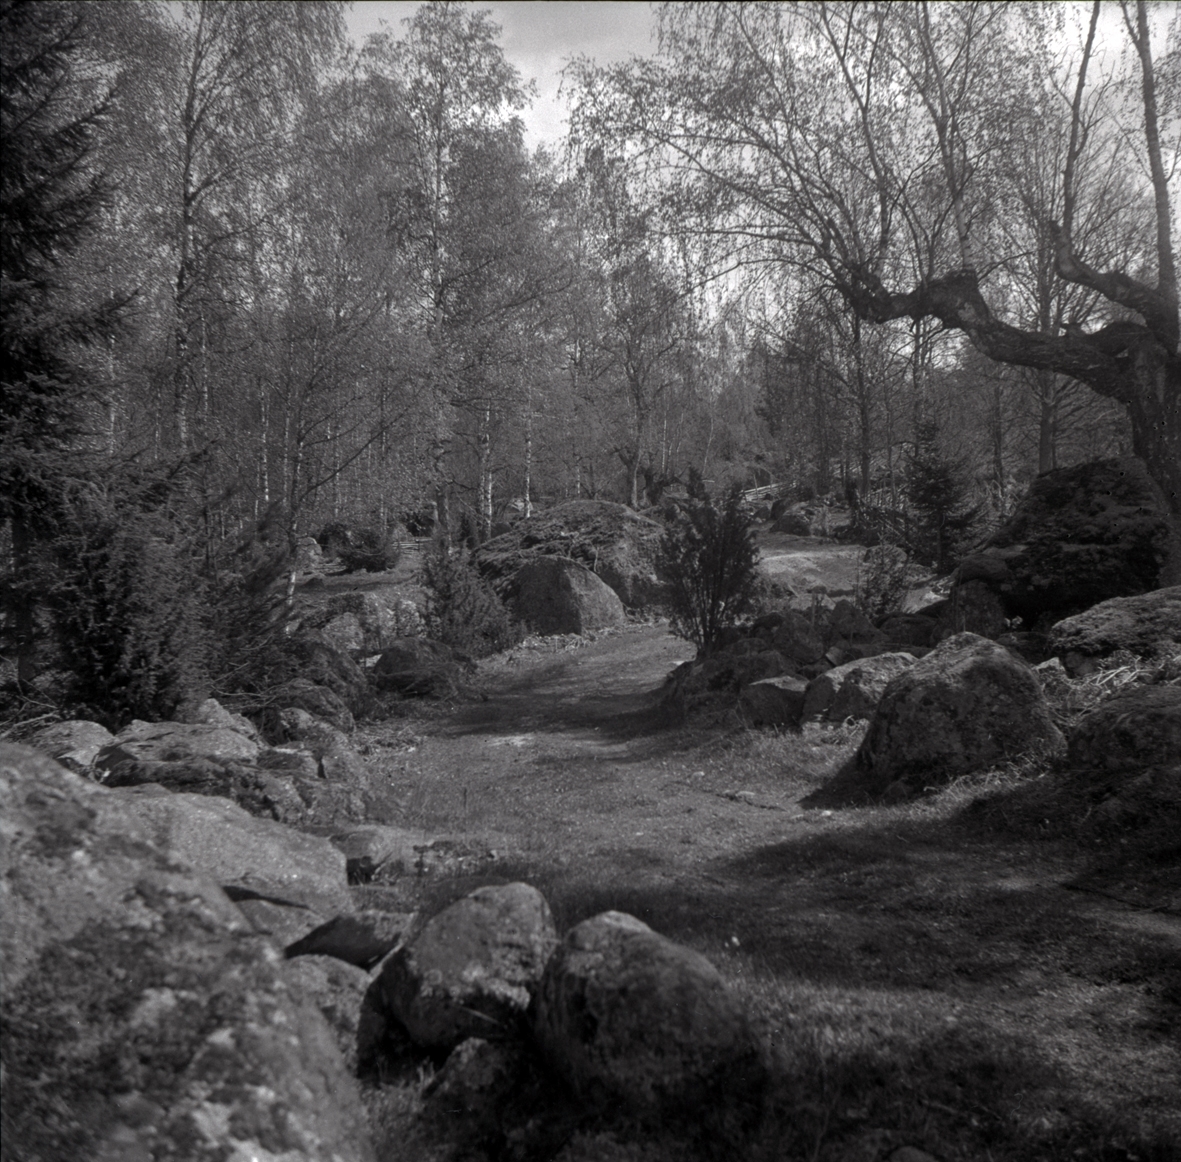 Väg kantad av stenar i Hökfors, primitiv väg skapad genom vältande av stenarna åt sidan.